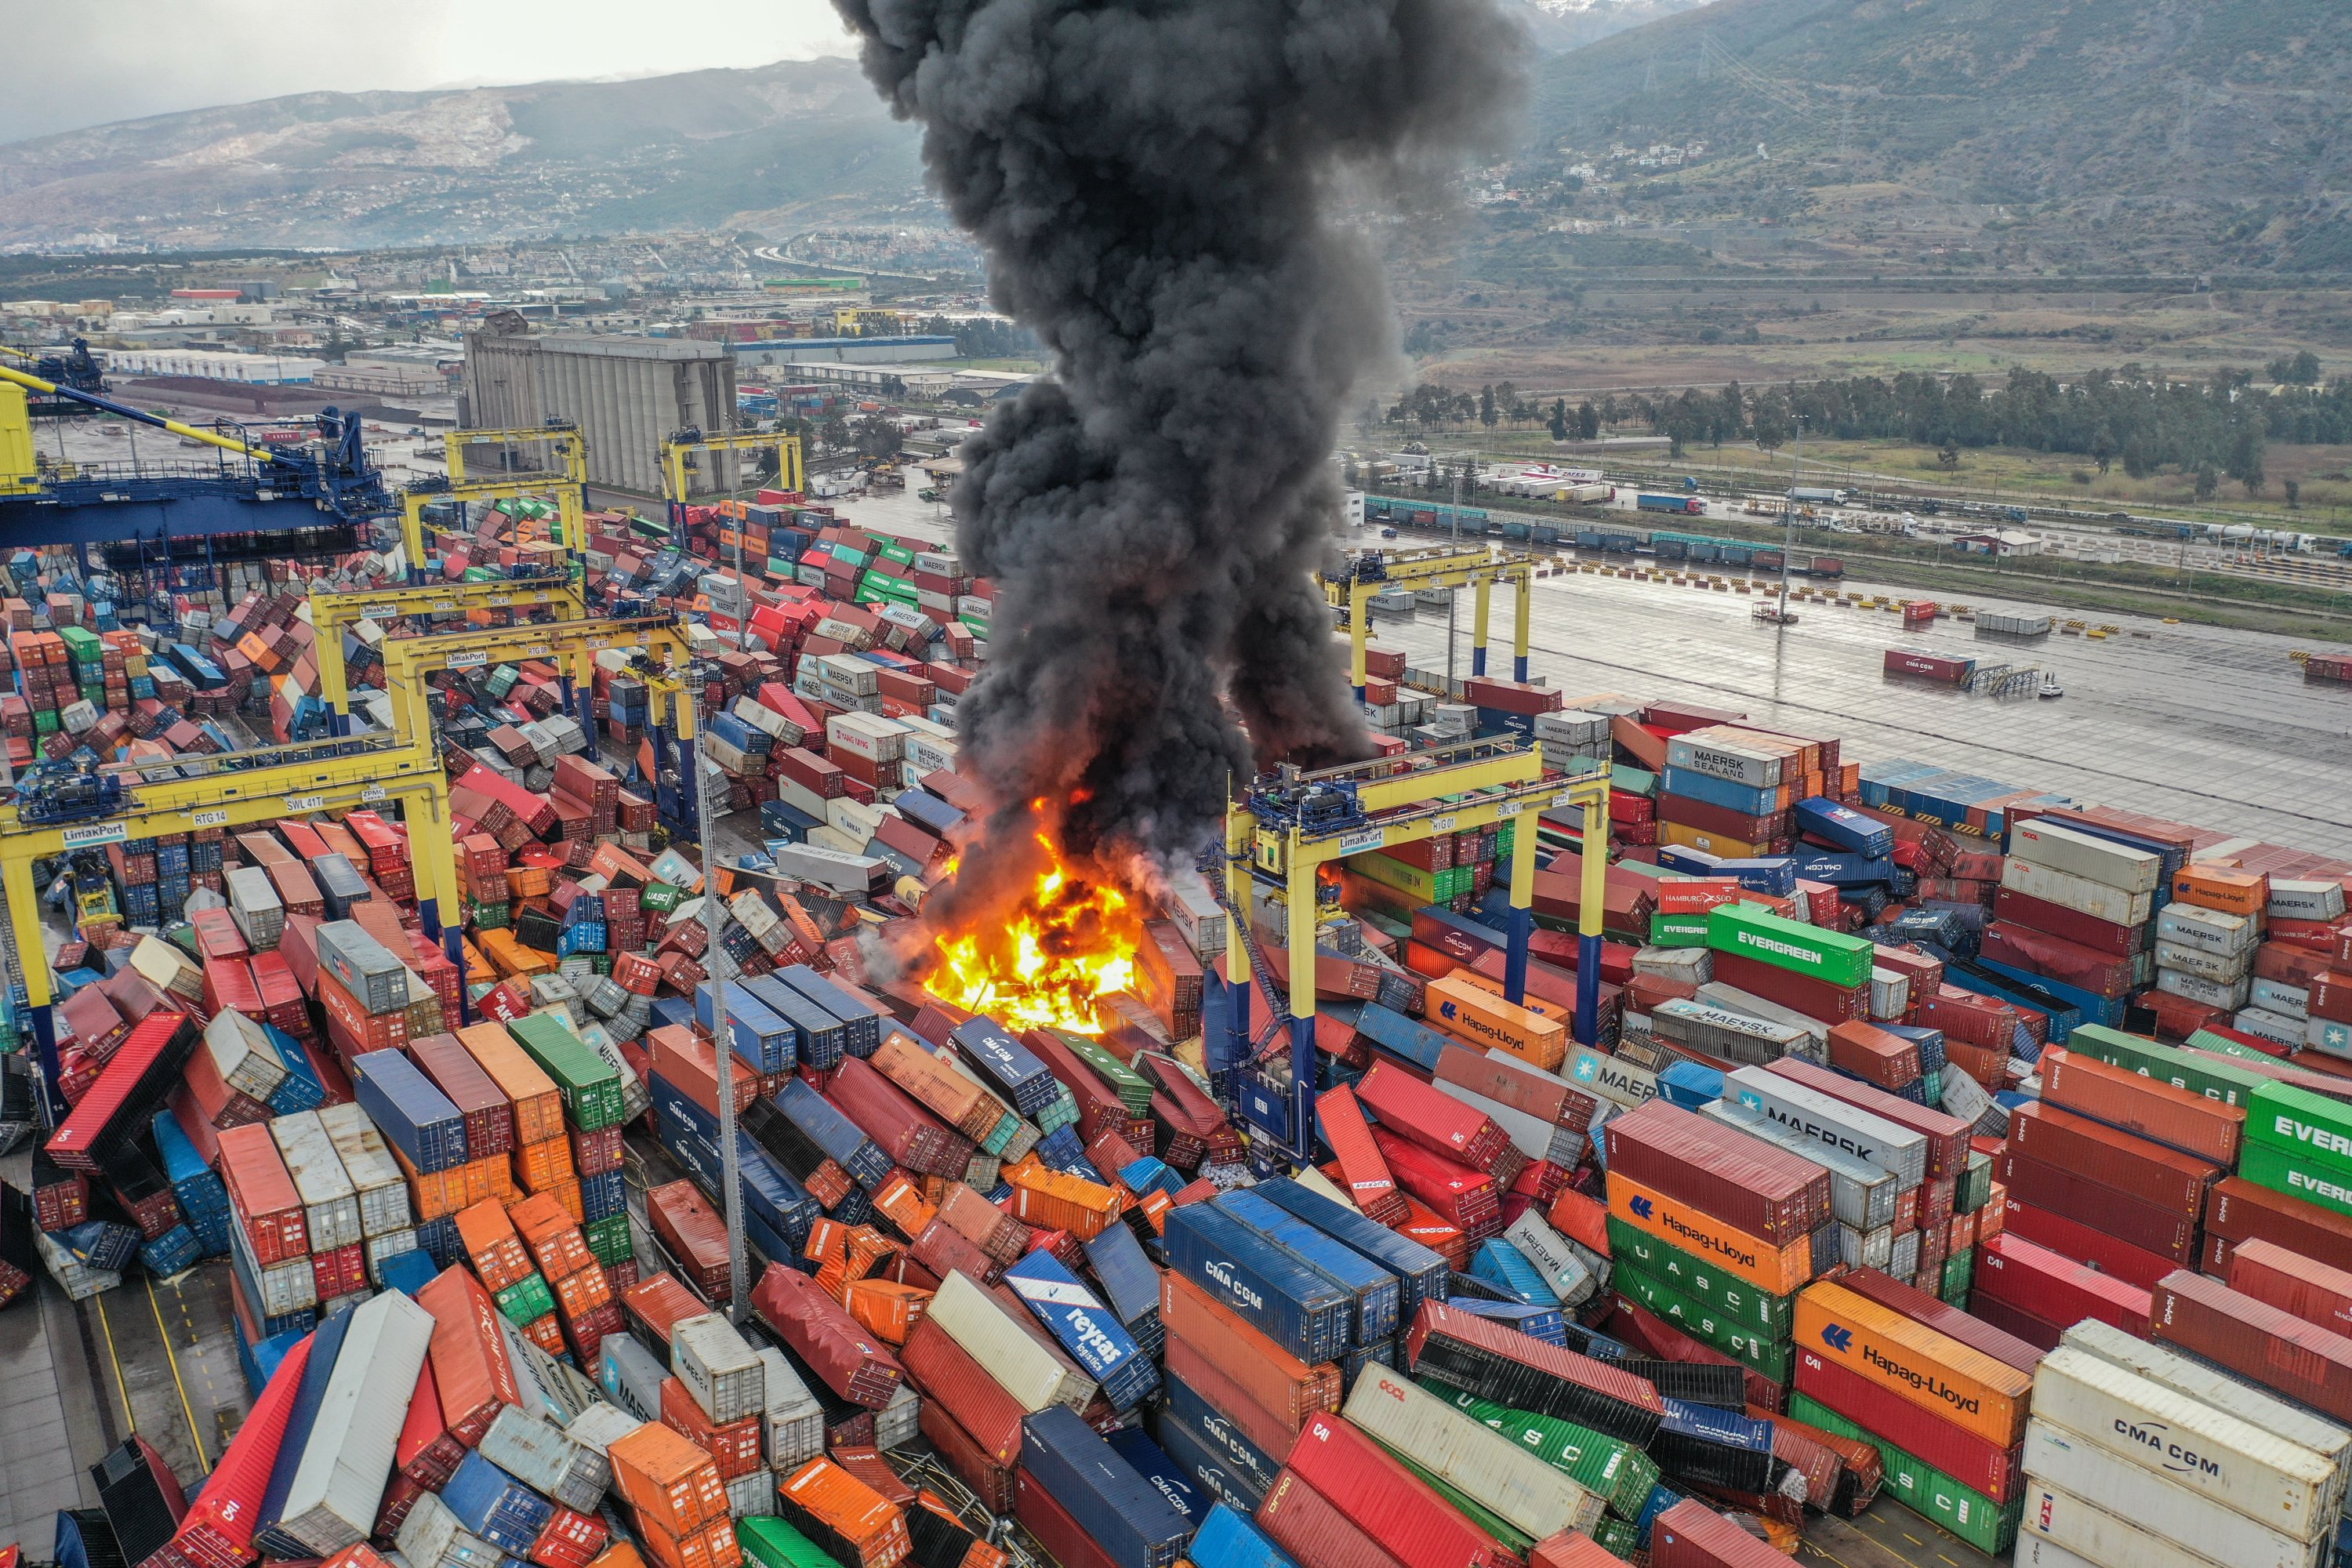 Asap gelap mengepul setelah kebakaran terjadi di antara kontainer yang terguling di pelabuhan utama di kota pesisir Mediterania Iskenderun setelah gempa bumi, Türkiye selatan, 6 Januari 2023. (Foto AA)